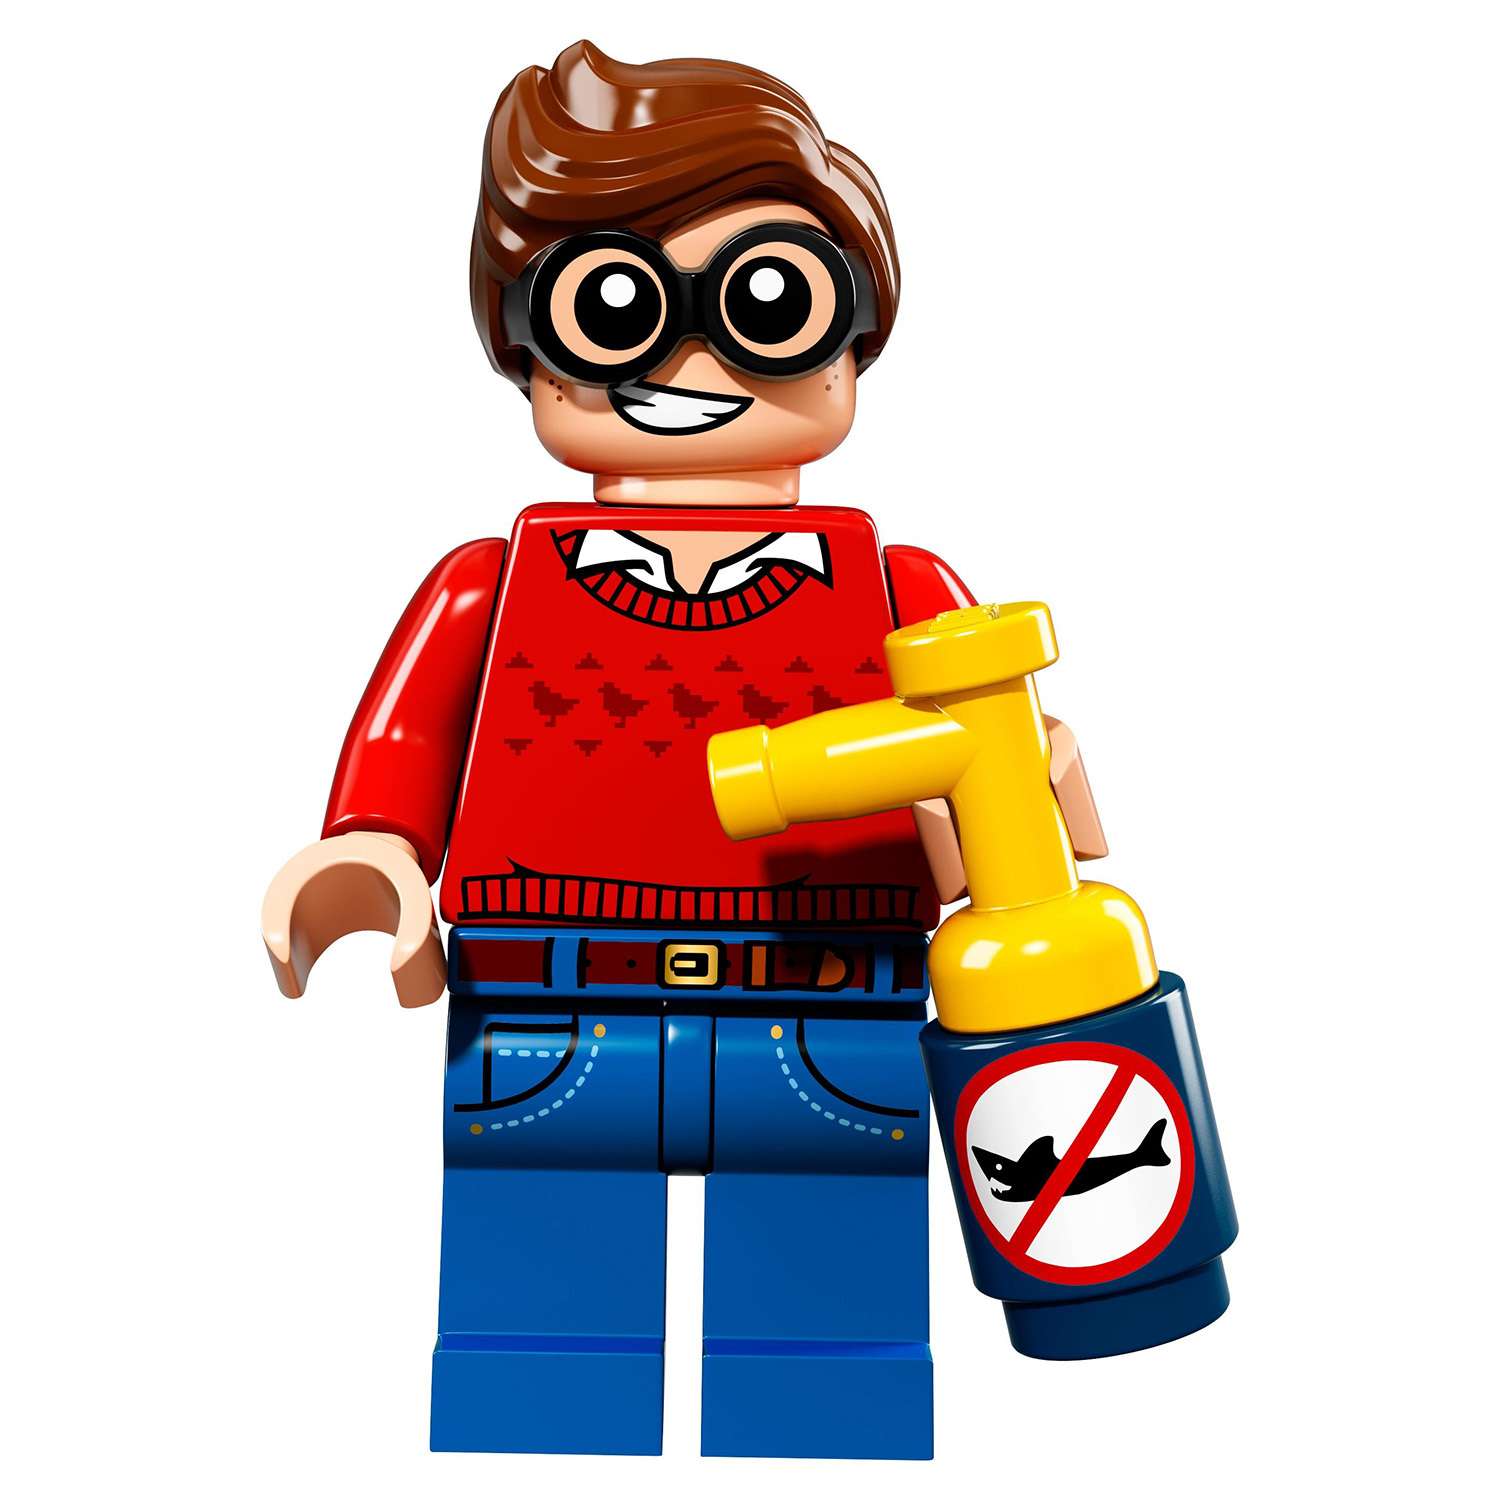 Конструктор LEGO Minifigures Минифигурки ФИЛЬМ: БЭТМЕН (71017) в ассортименте - фото 5